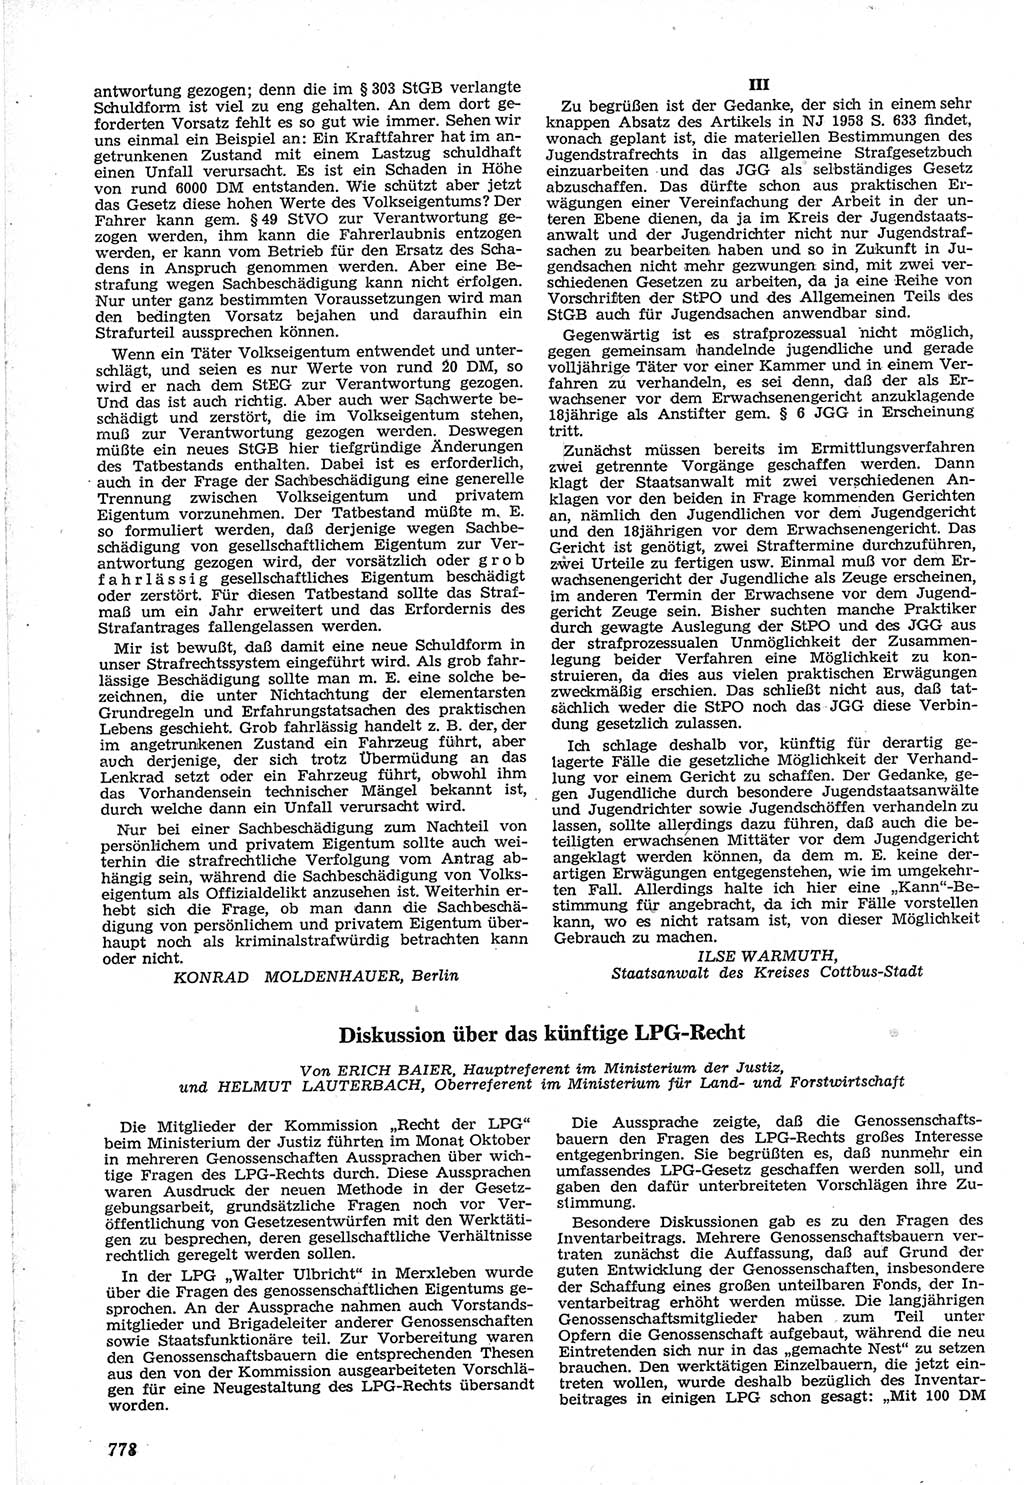 Neue Justiz (NJ), Zeitschrift für Recht und Rechtswissenschaft [Deutsche Demokratische Republik (DDR)], 12. Jahrgang 1958, Seite 778 (NJ DDR 1958, S. 778)